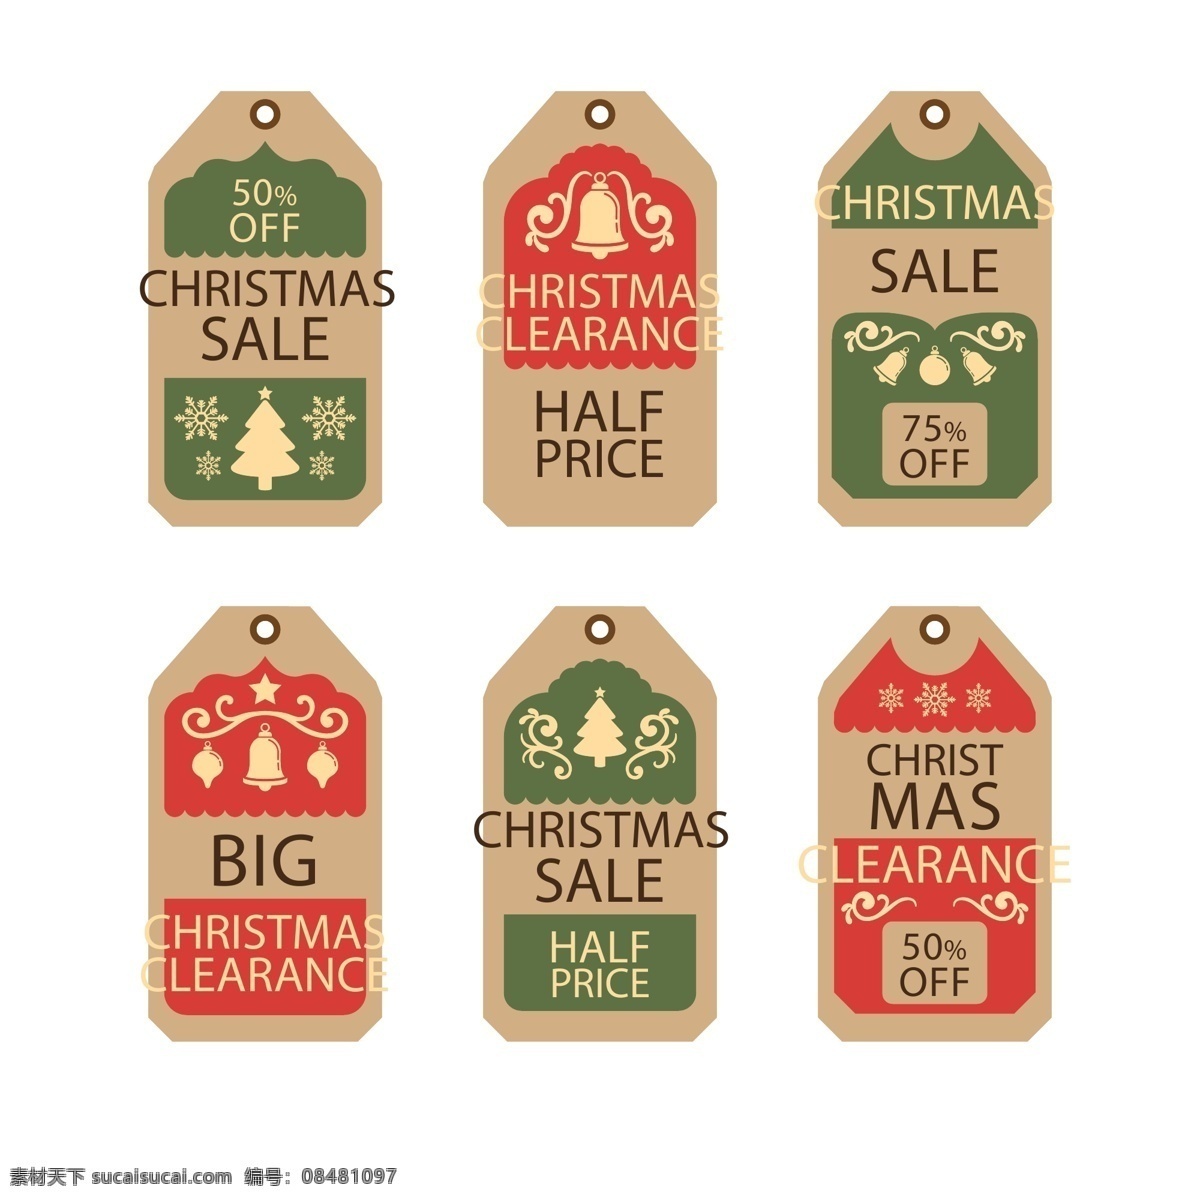 经典 英文 圣诞节 标签 绿色 促销 矢量素材 红色 圣诞树 铃铛 优惠